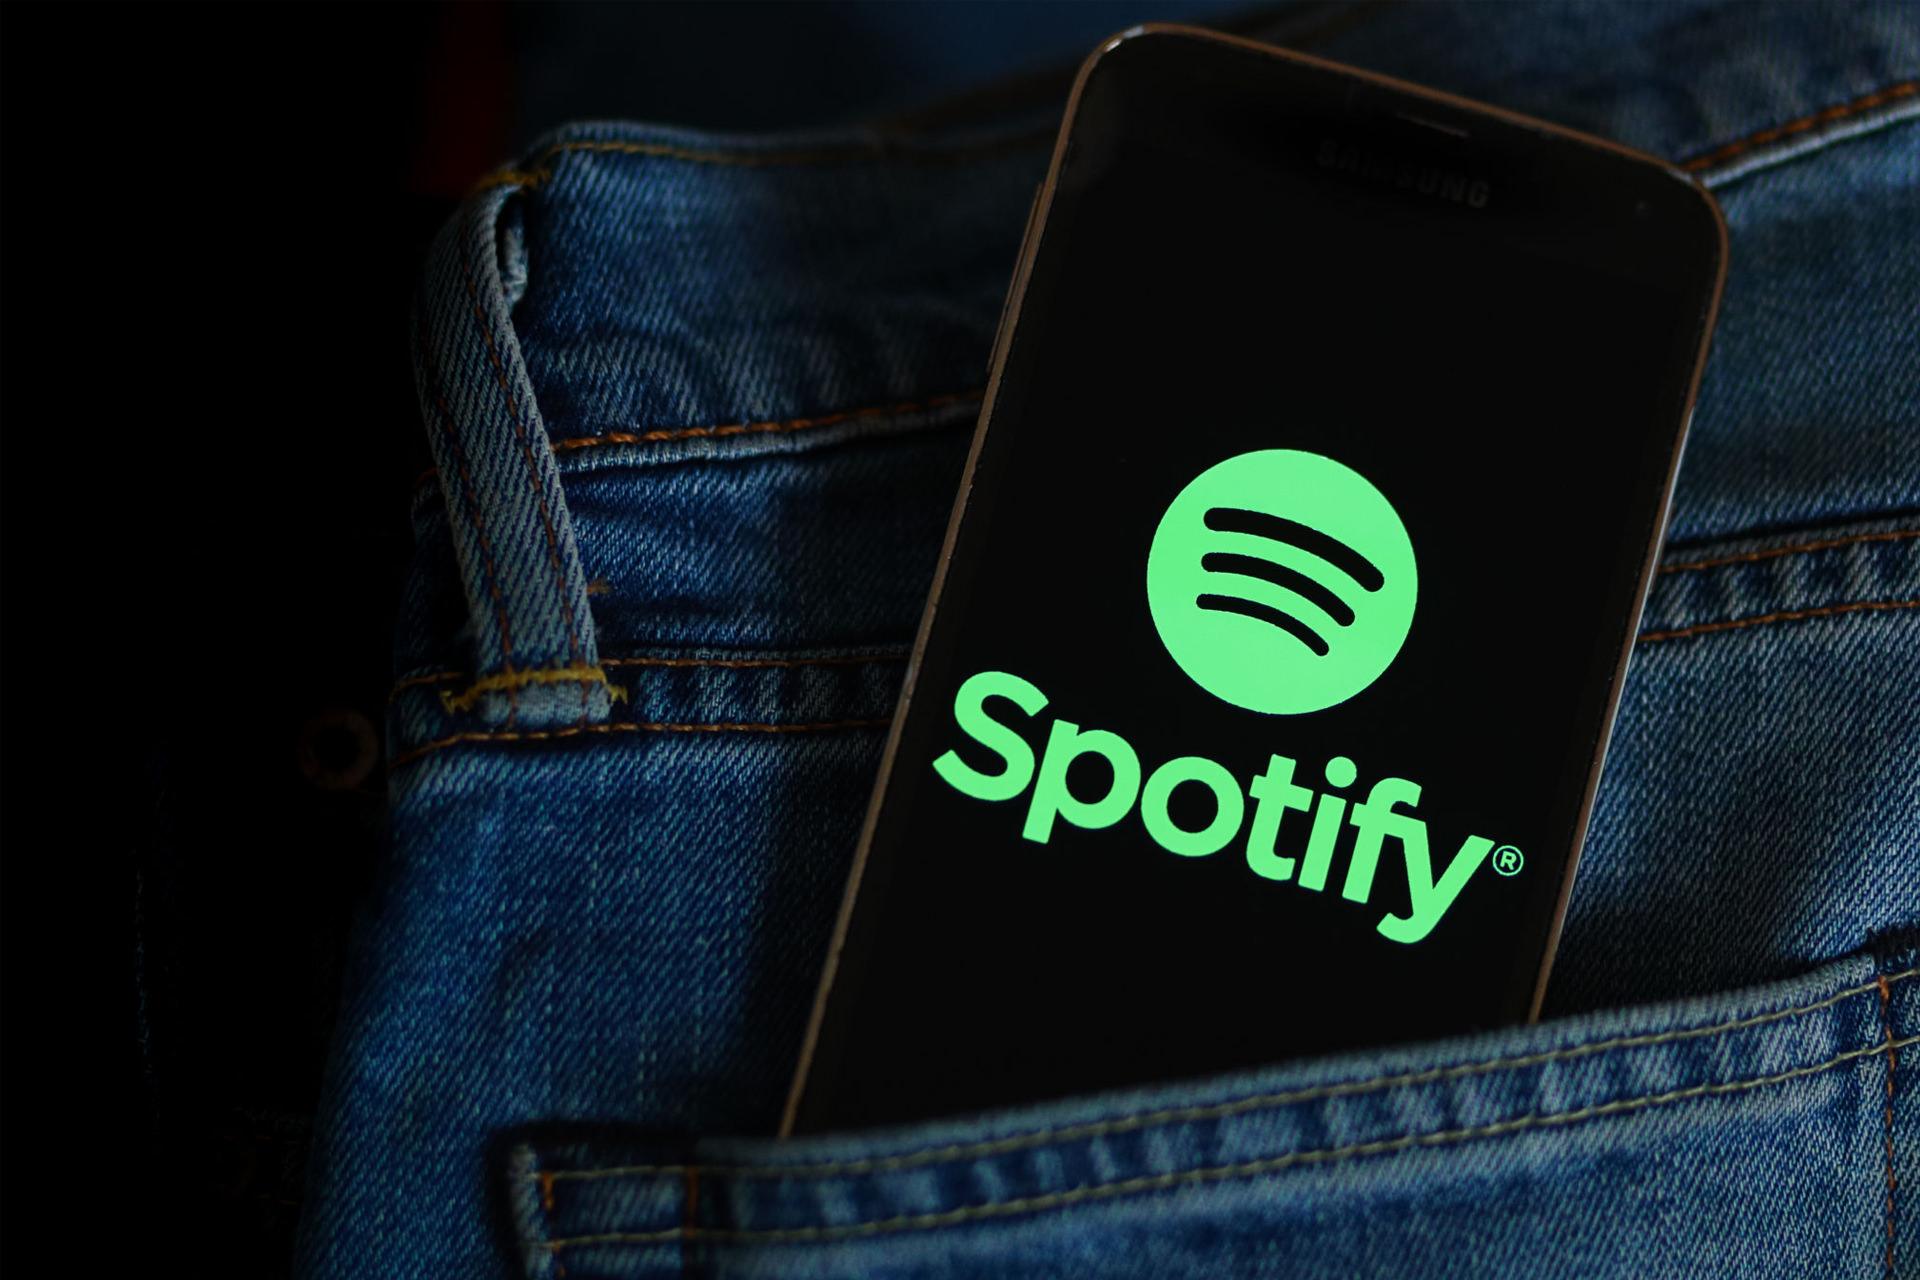 لوگو اسپاتیفای / Spotify در نمایشگر گوشی در جیب شلوار